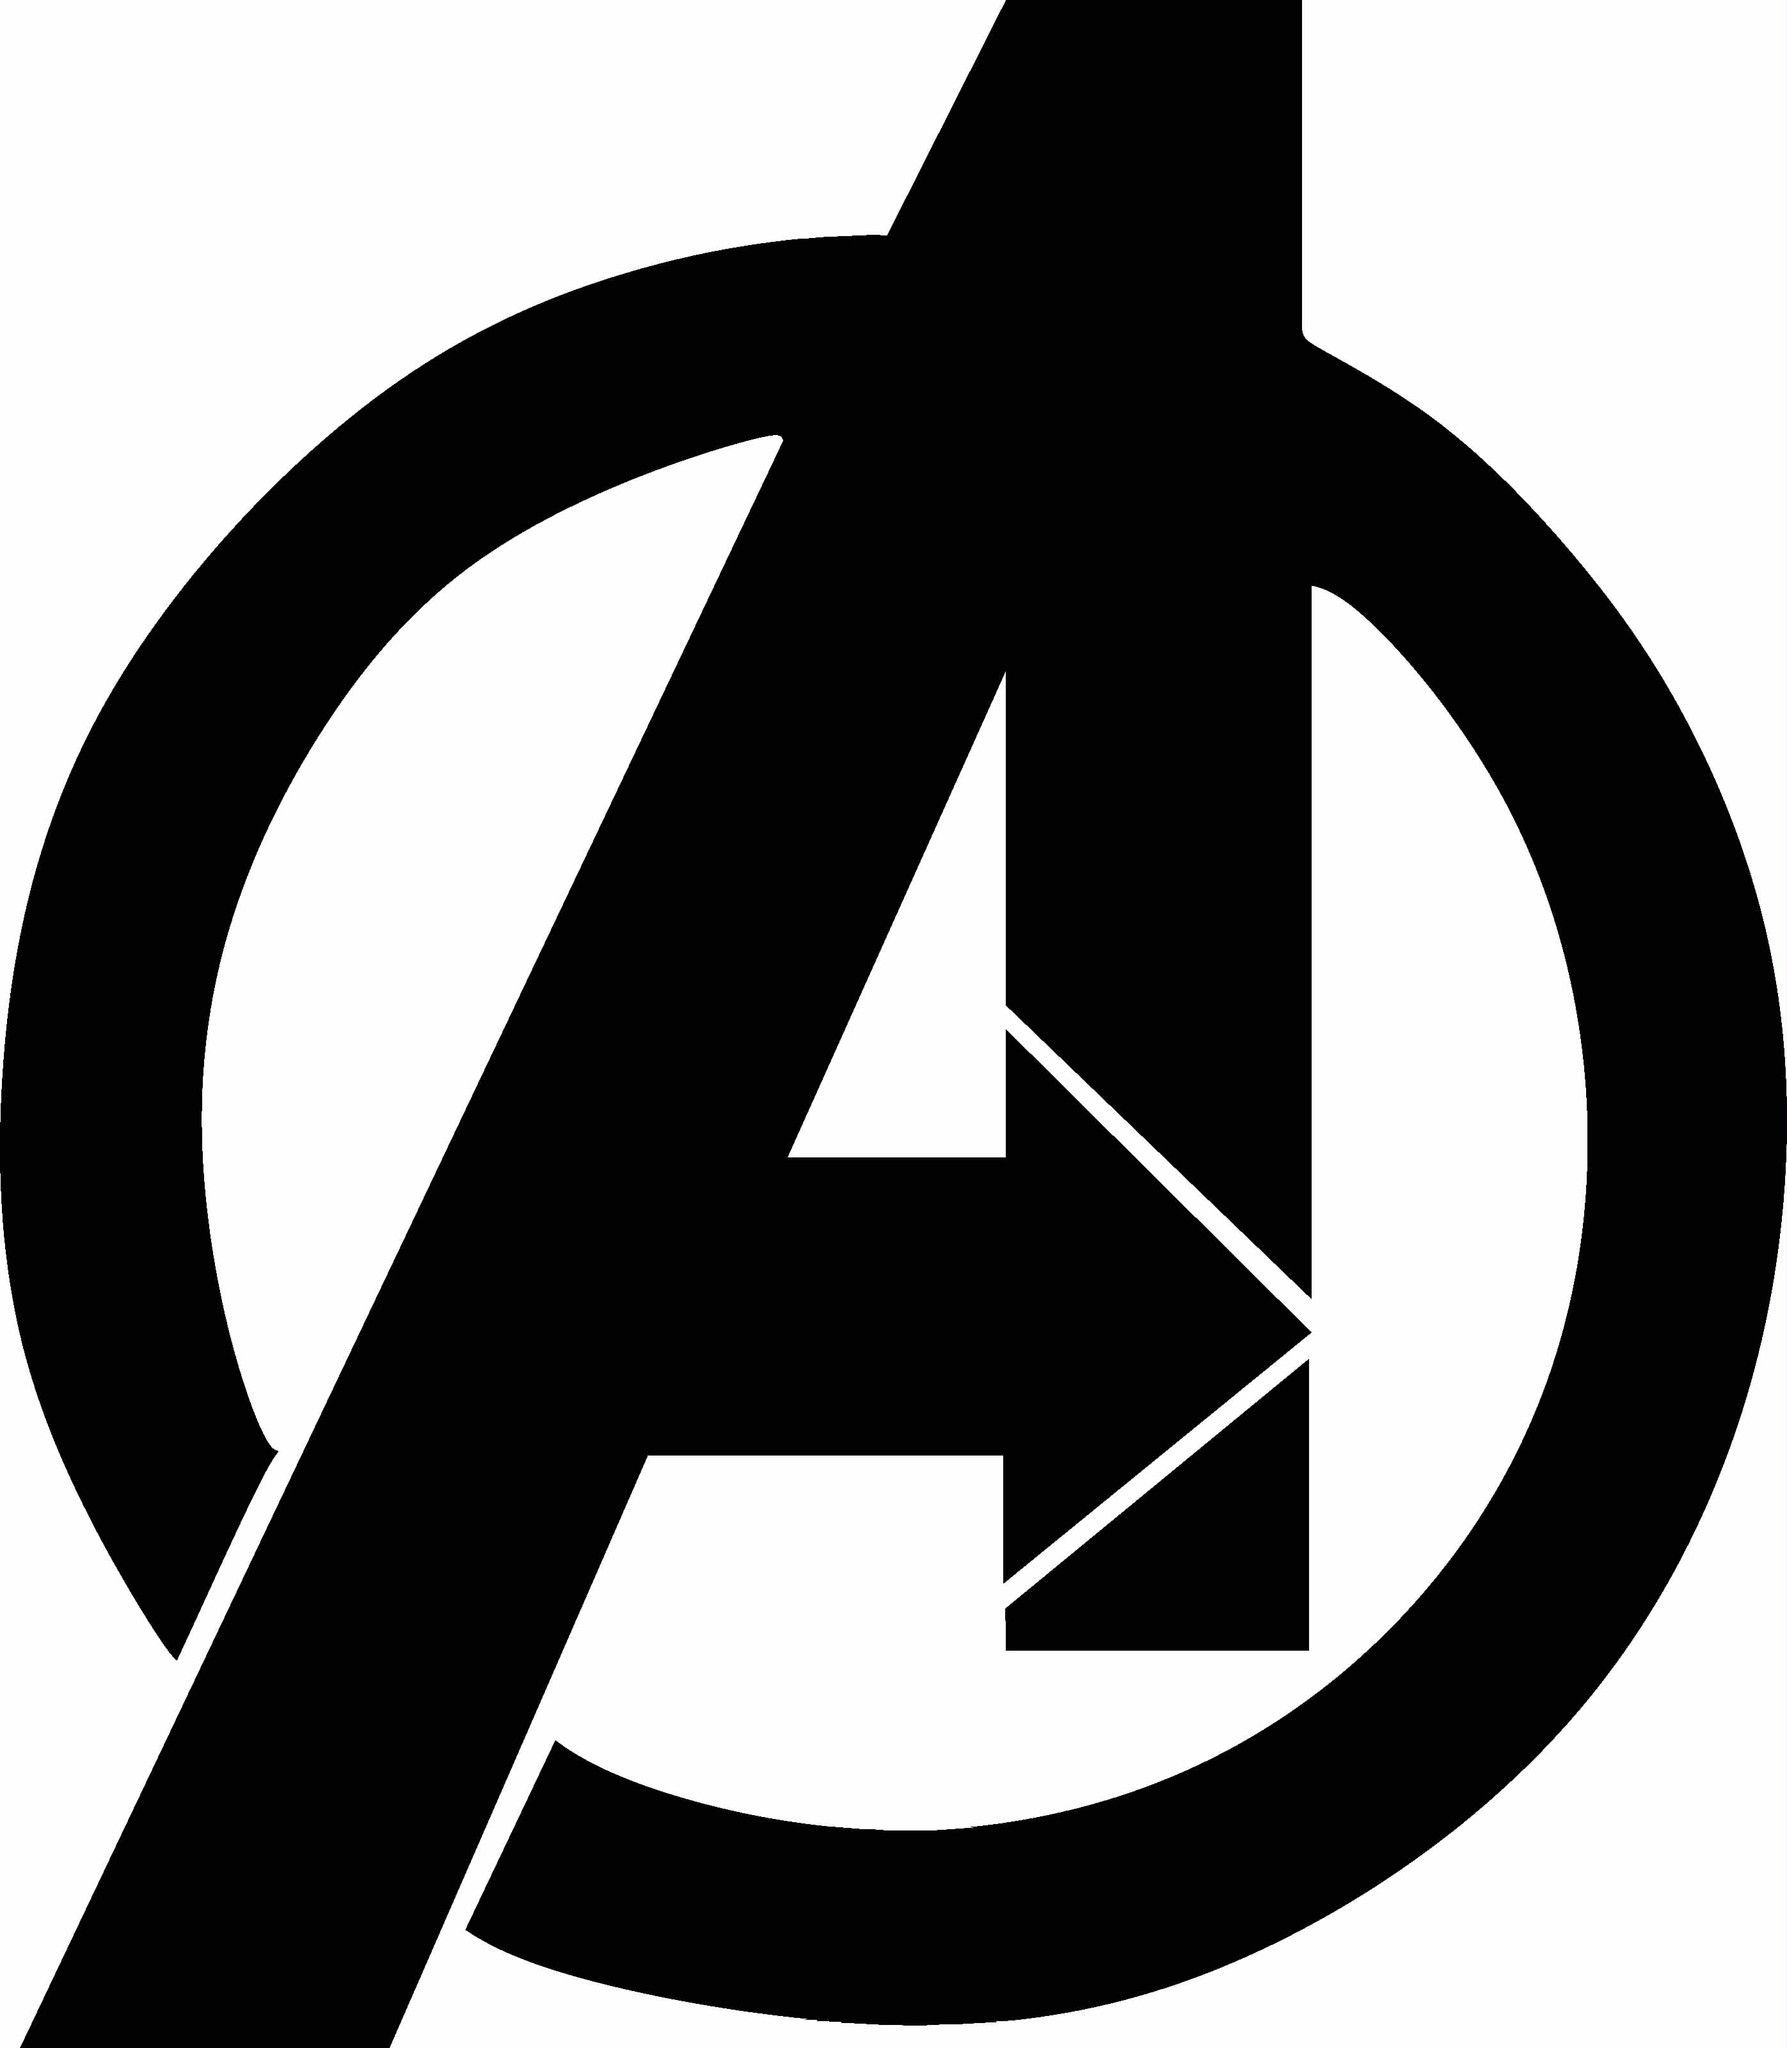 Avengers logo vinyl.